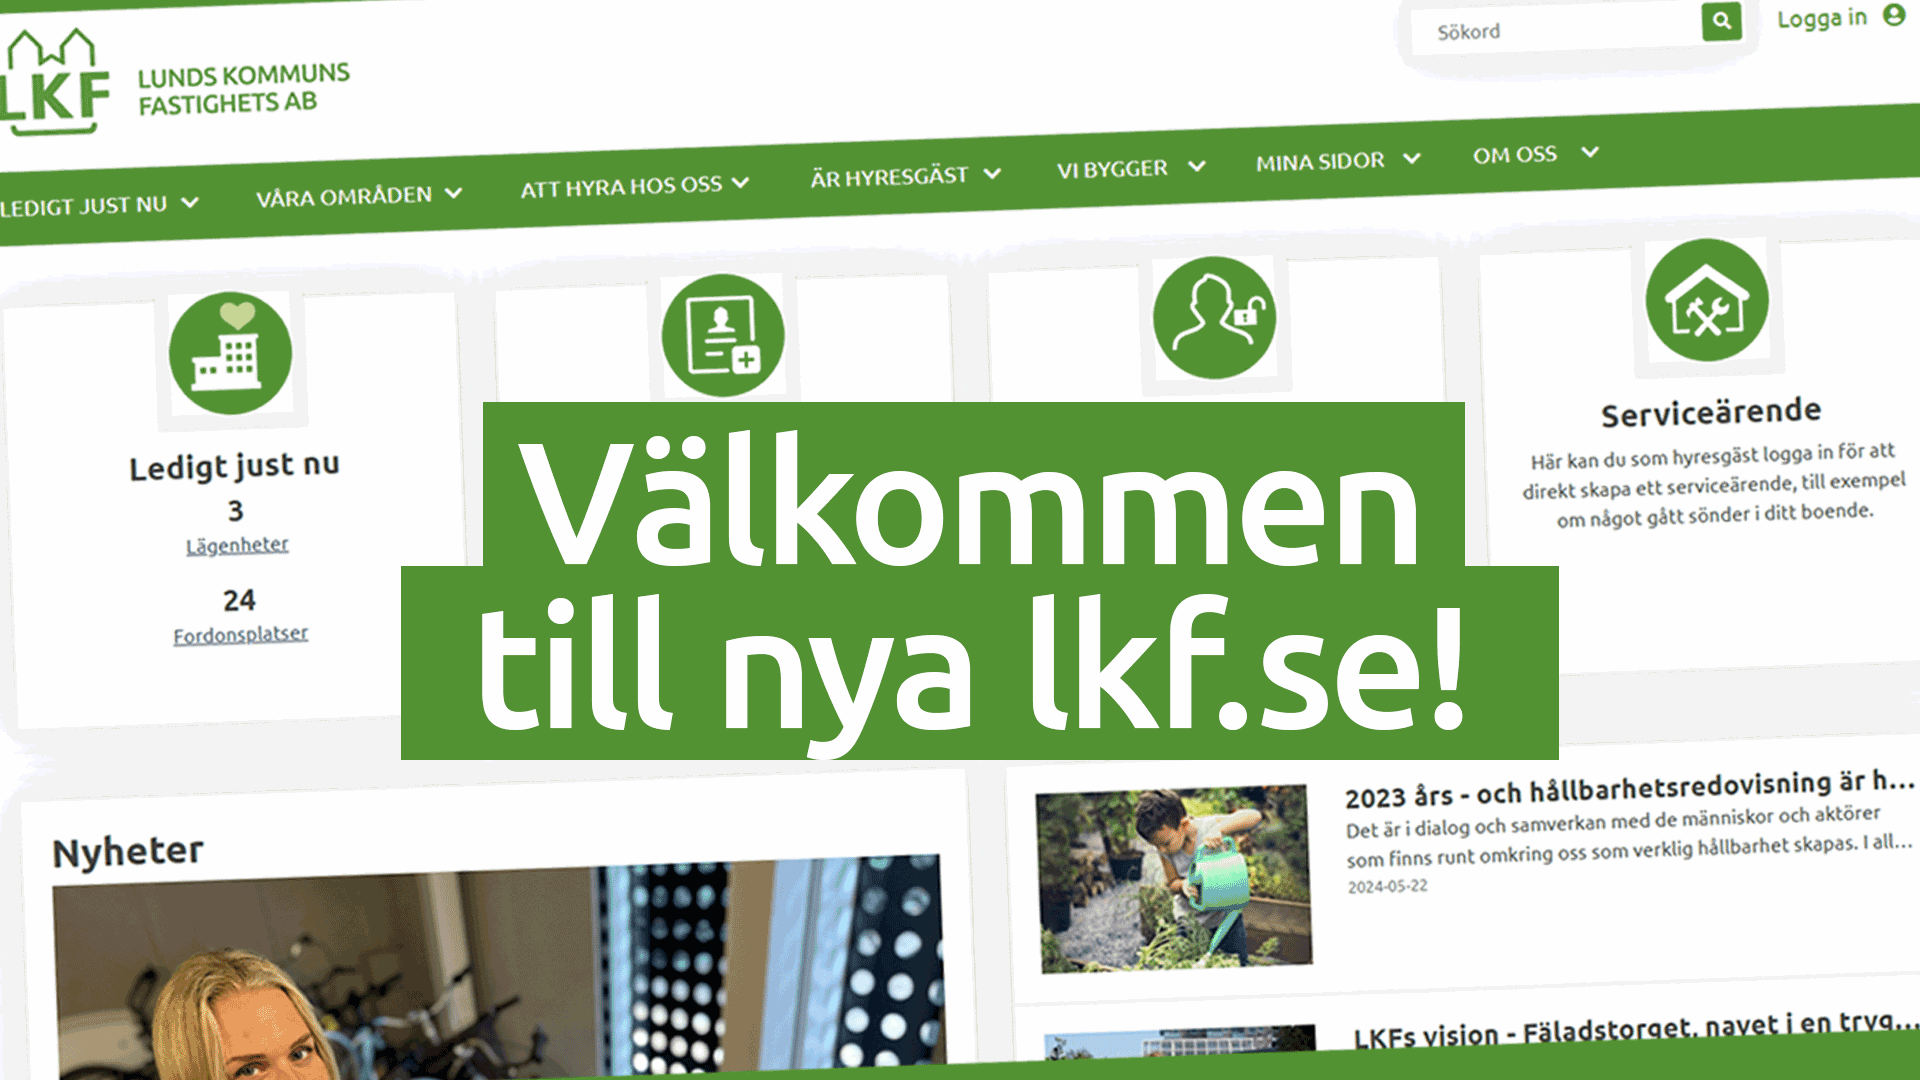 En bild på nya hemsidan med texten "Välkommen till nya lkf.se!"